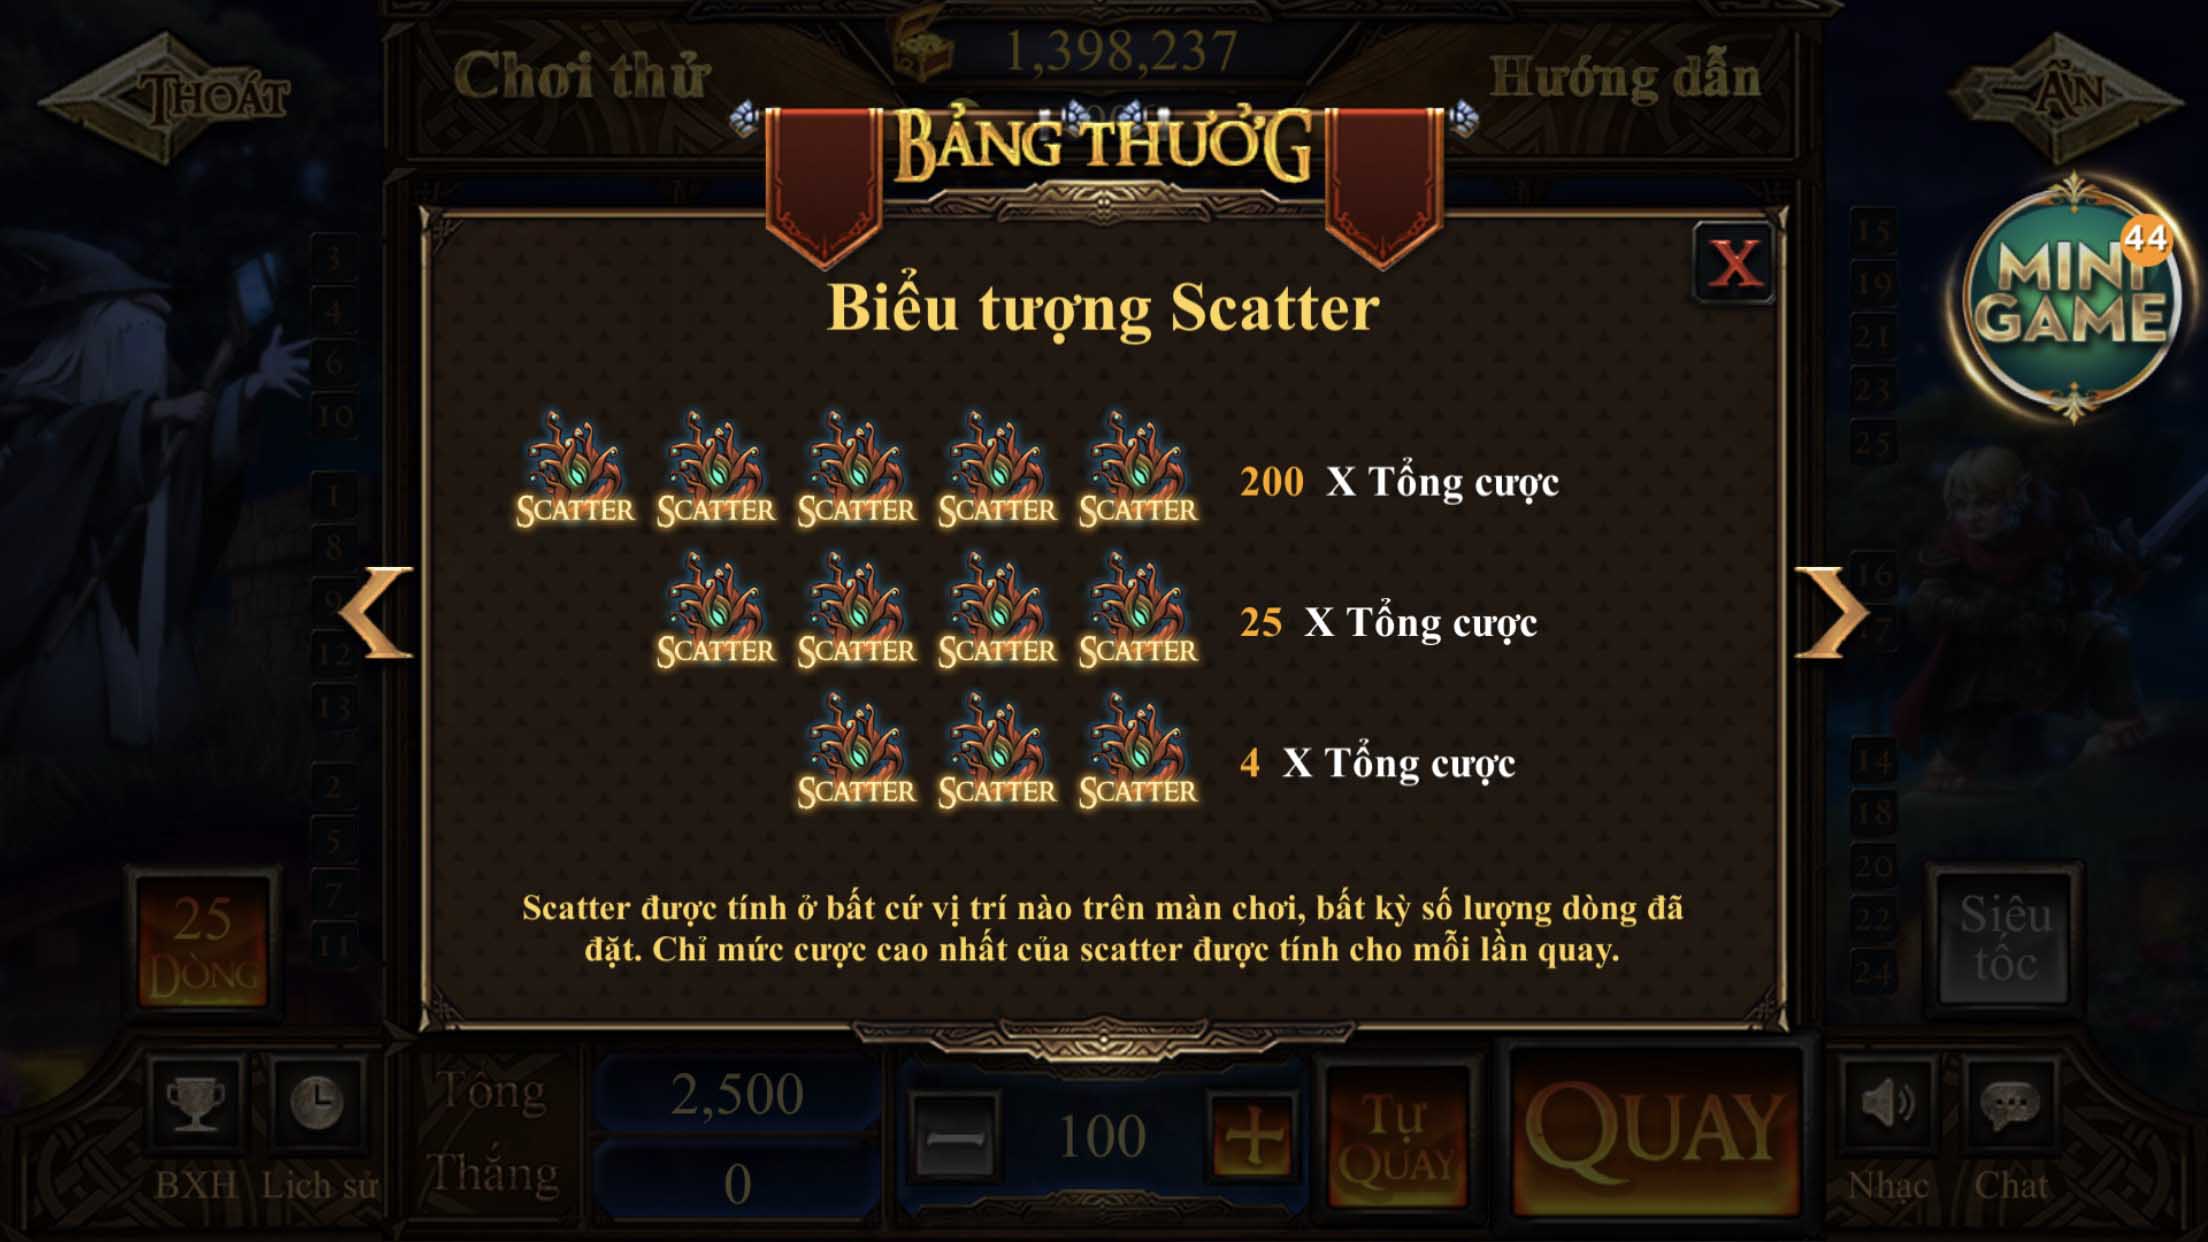 Hướng dẫn chơi Slot game Chúa Nhẫn Kingfun